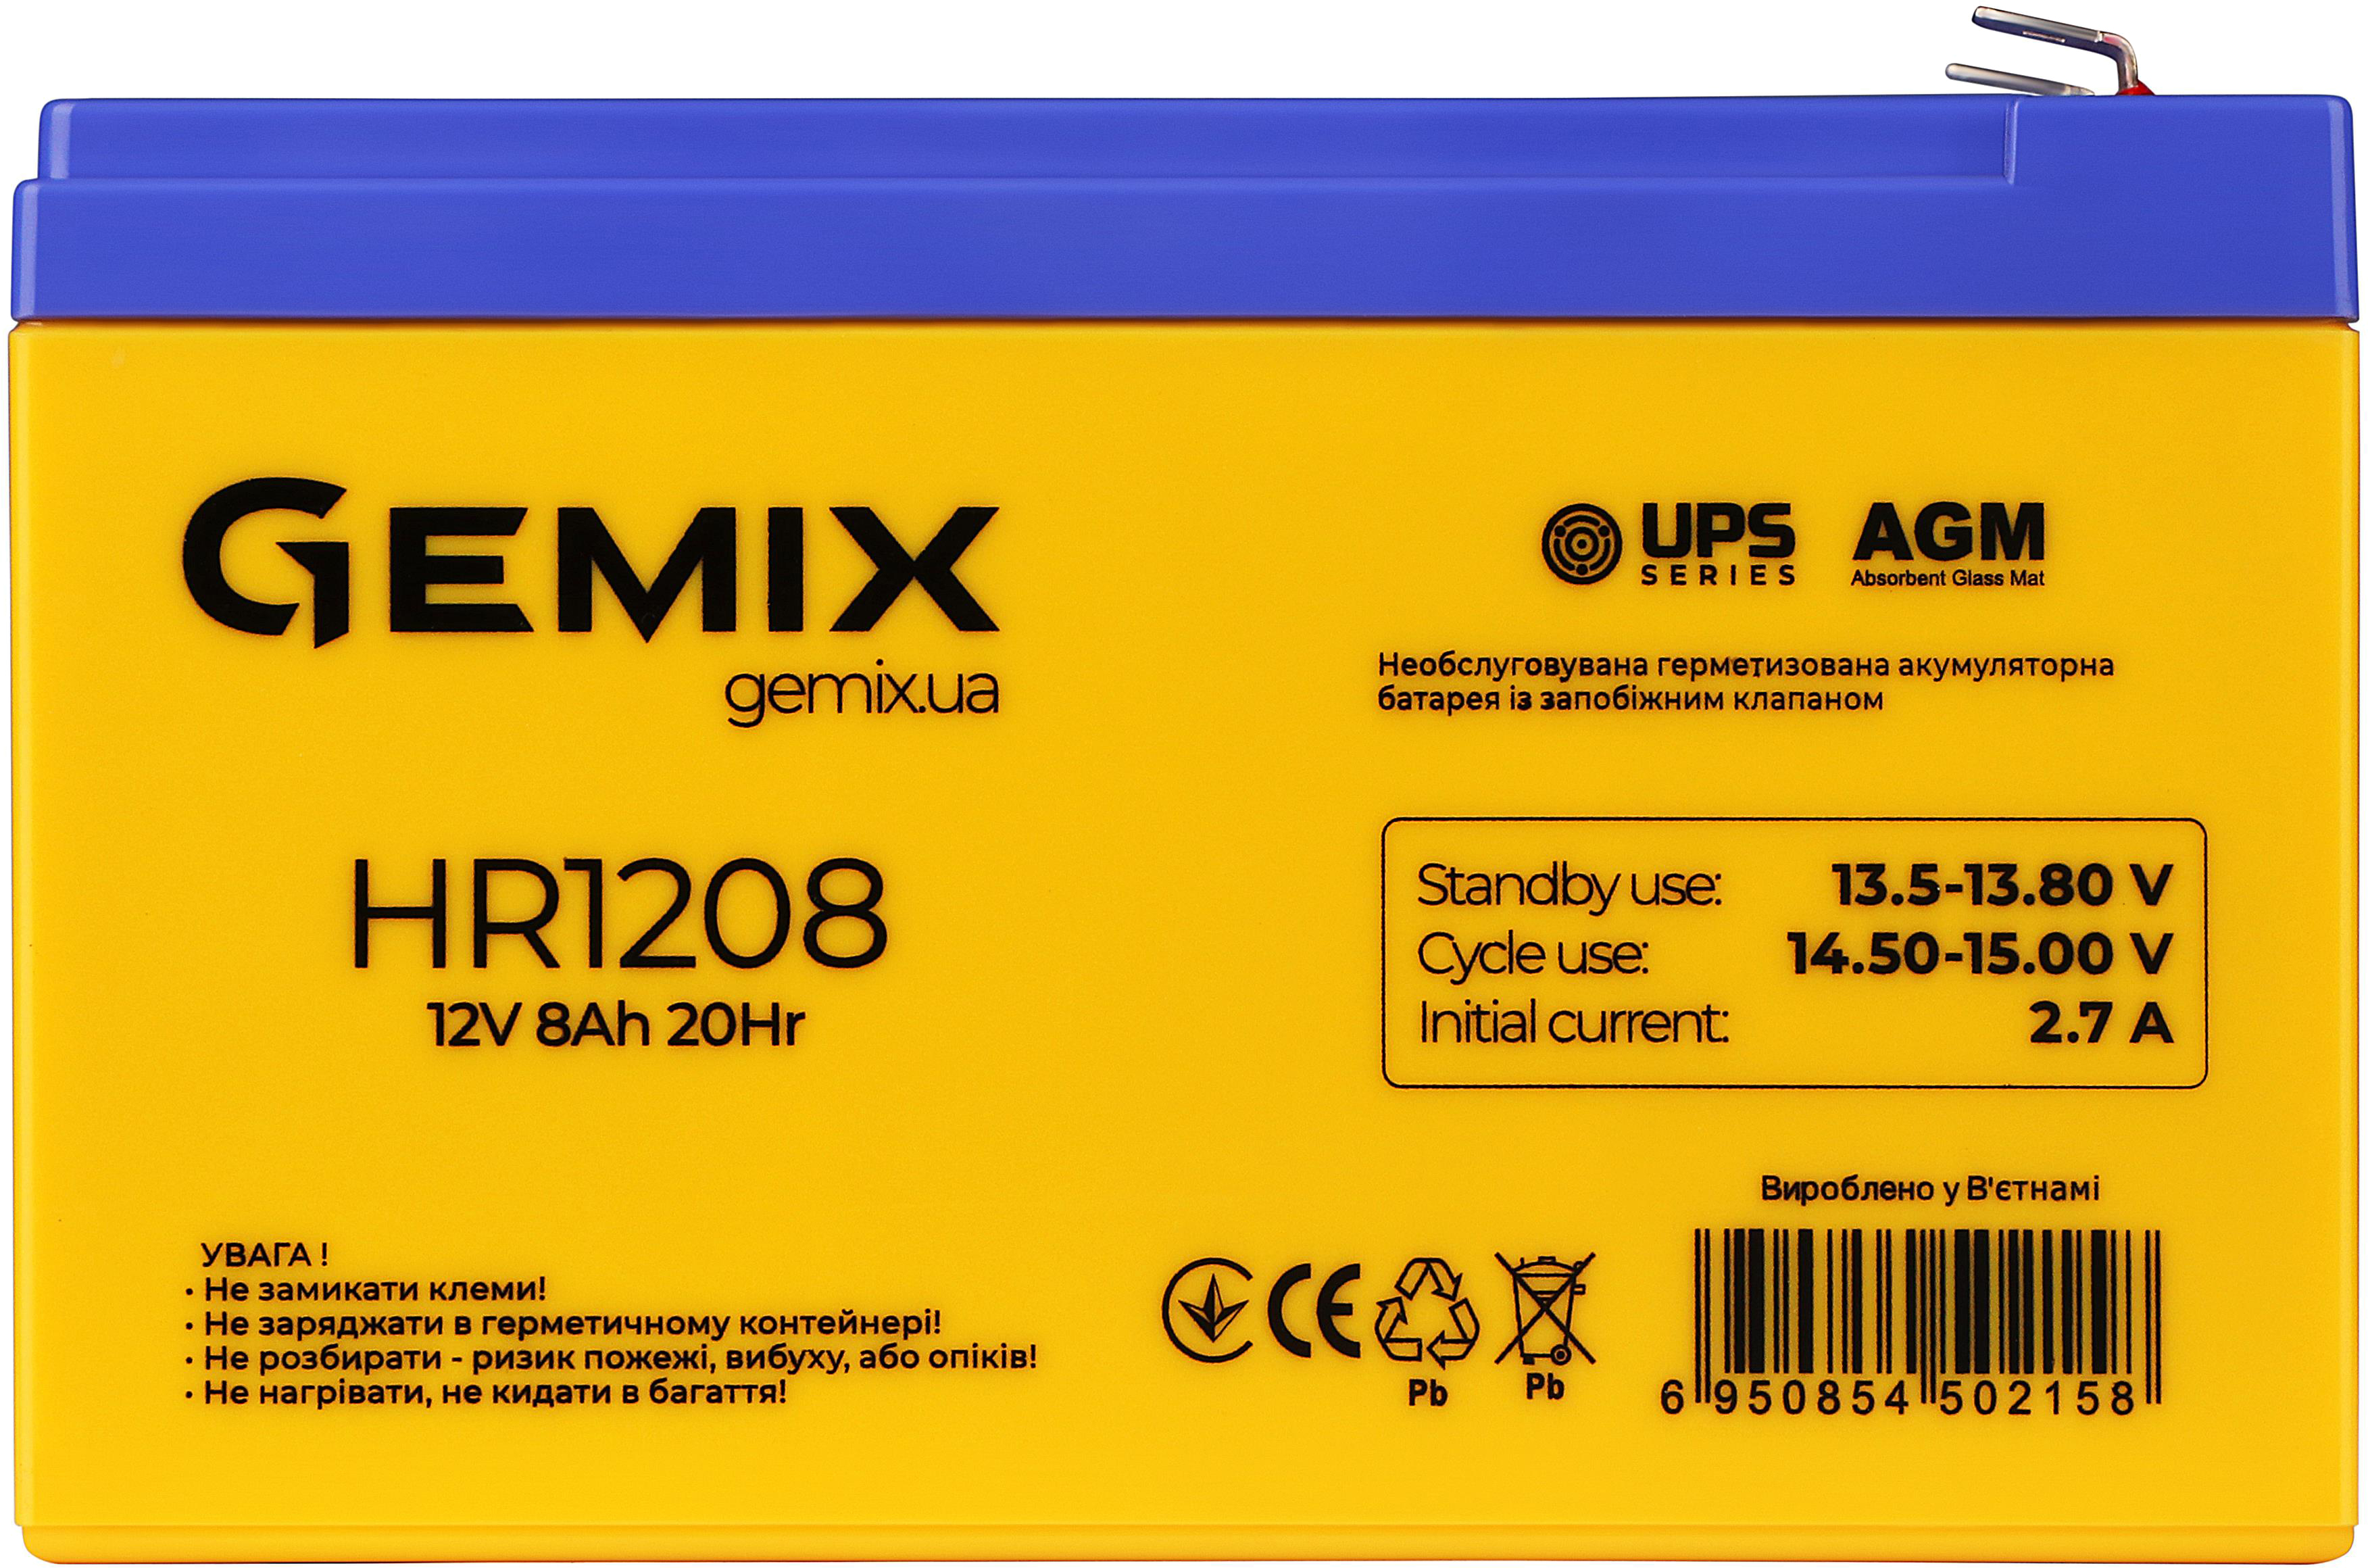 Gemix HR1208